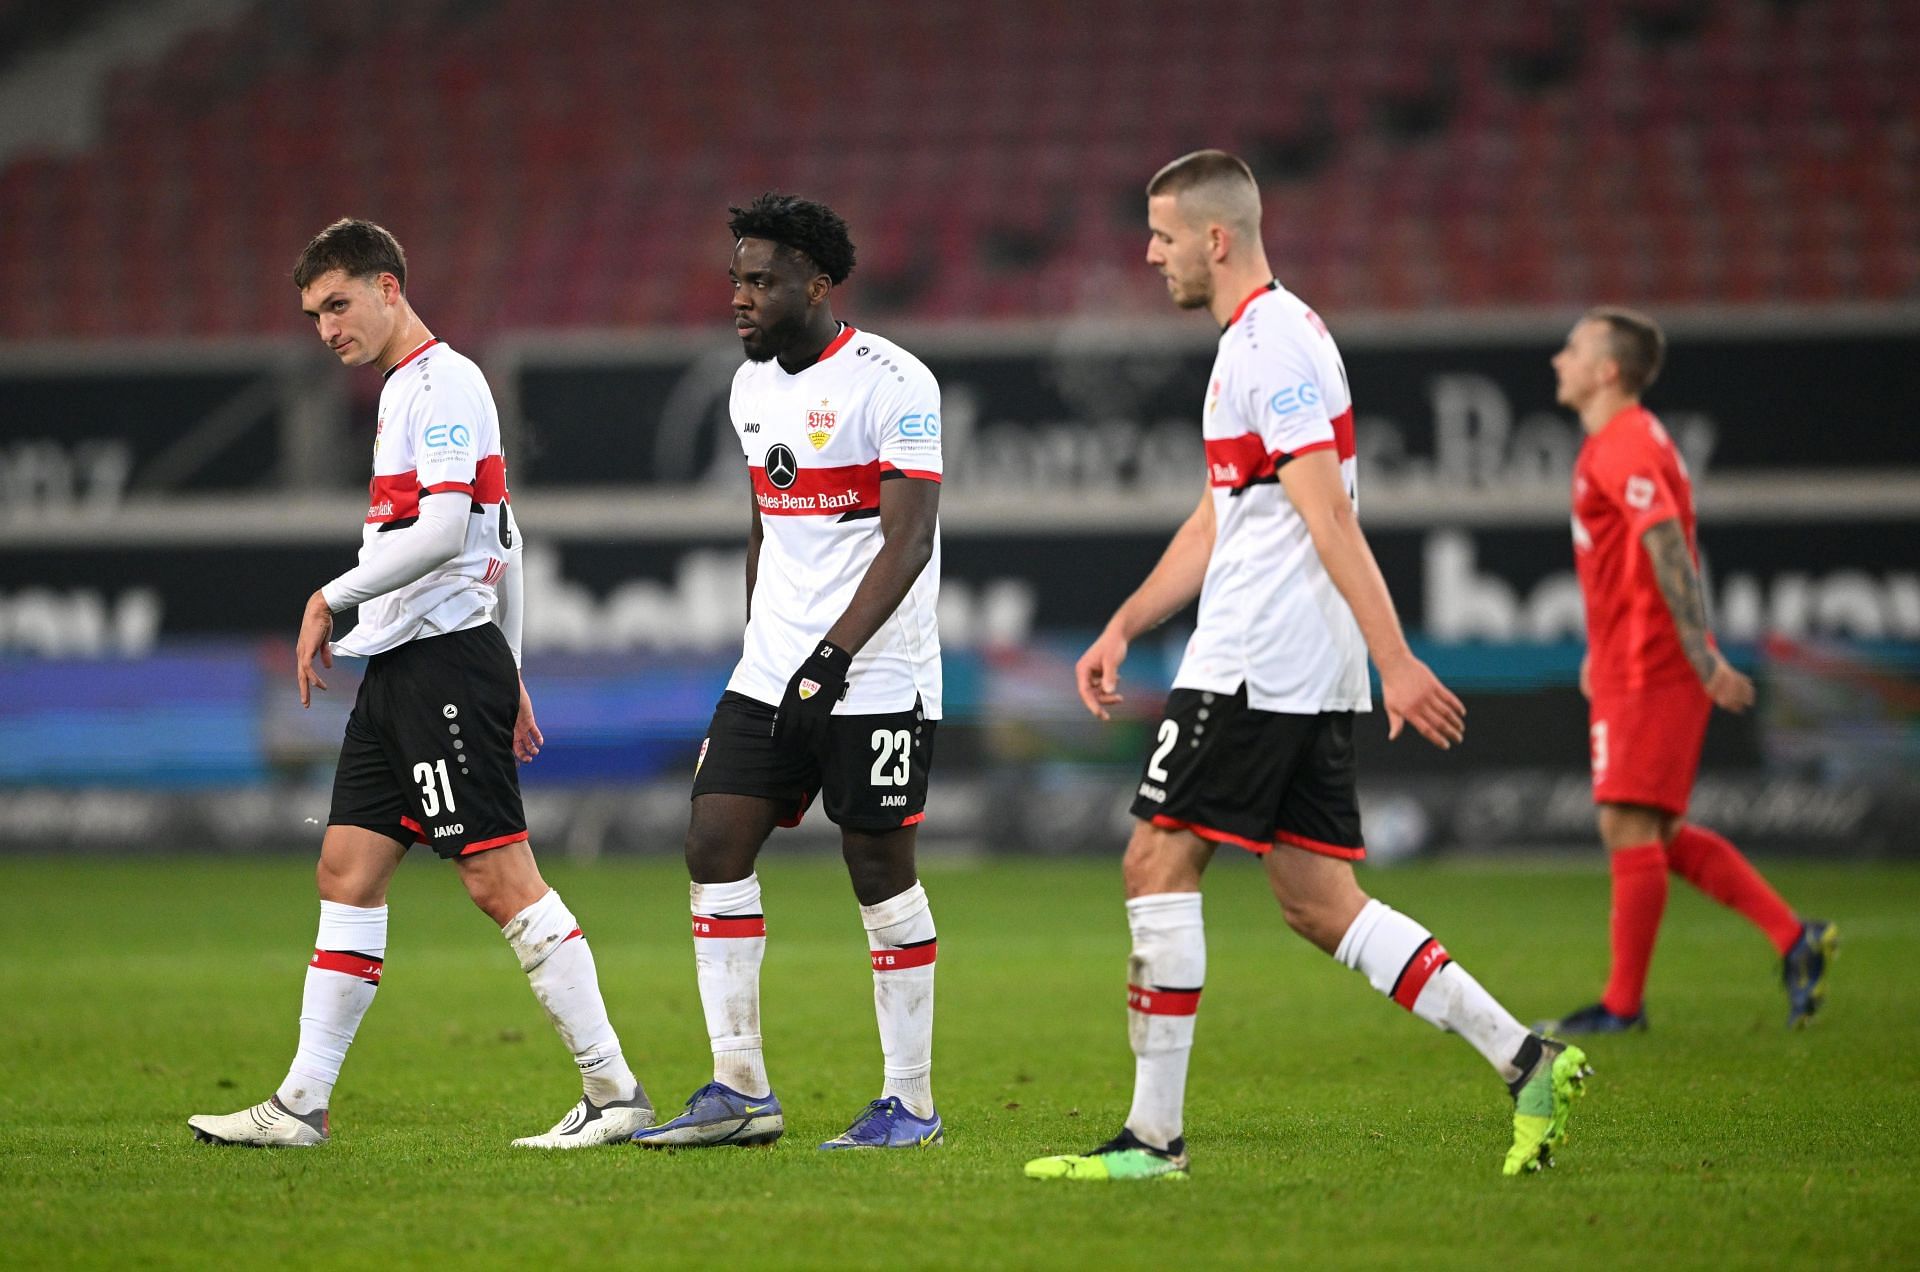 VfB Stuttgart will face on Eintracht Frankfurt on Saturday - Bundesliga